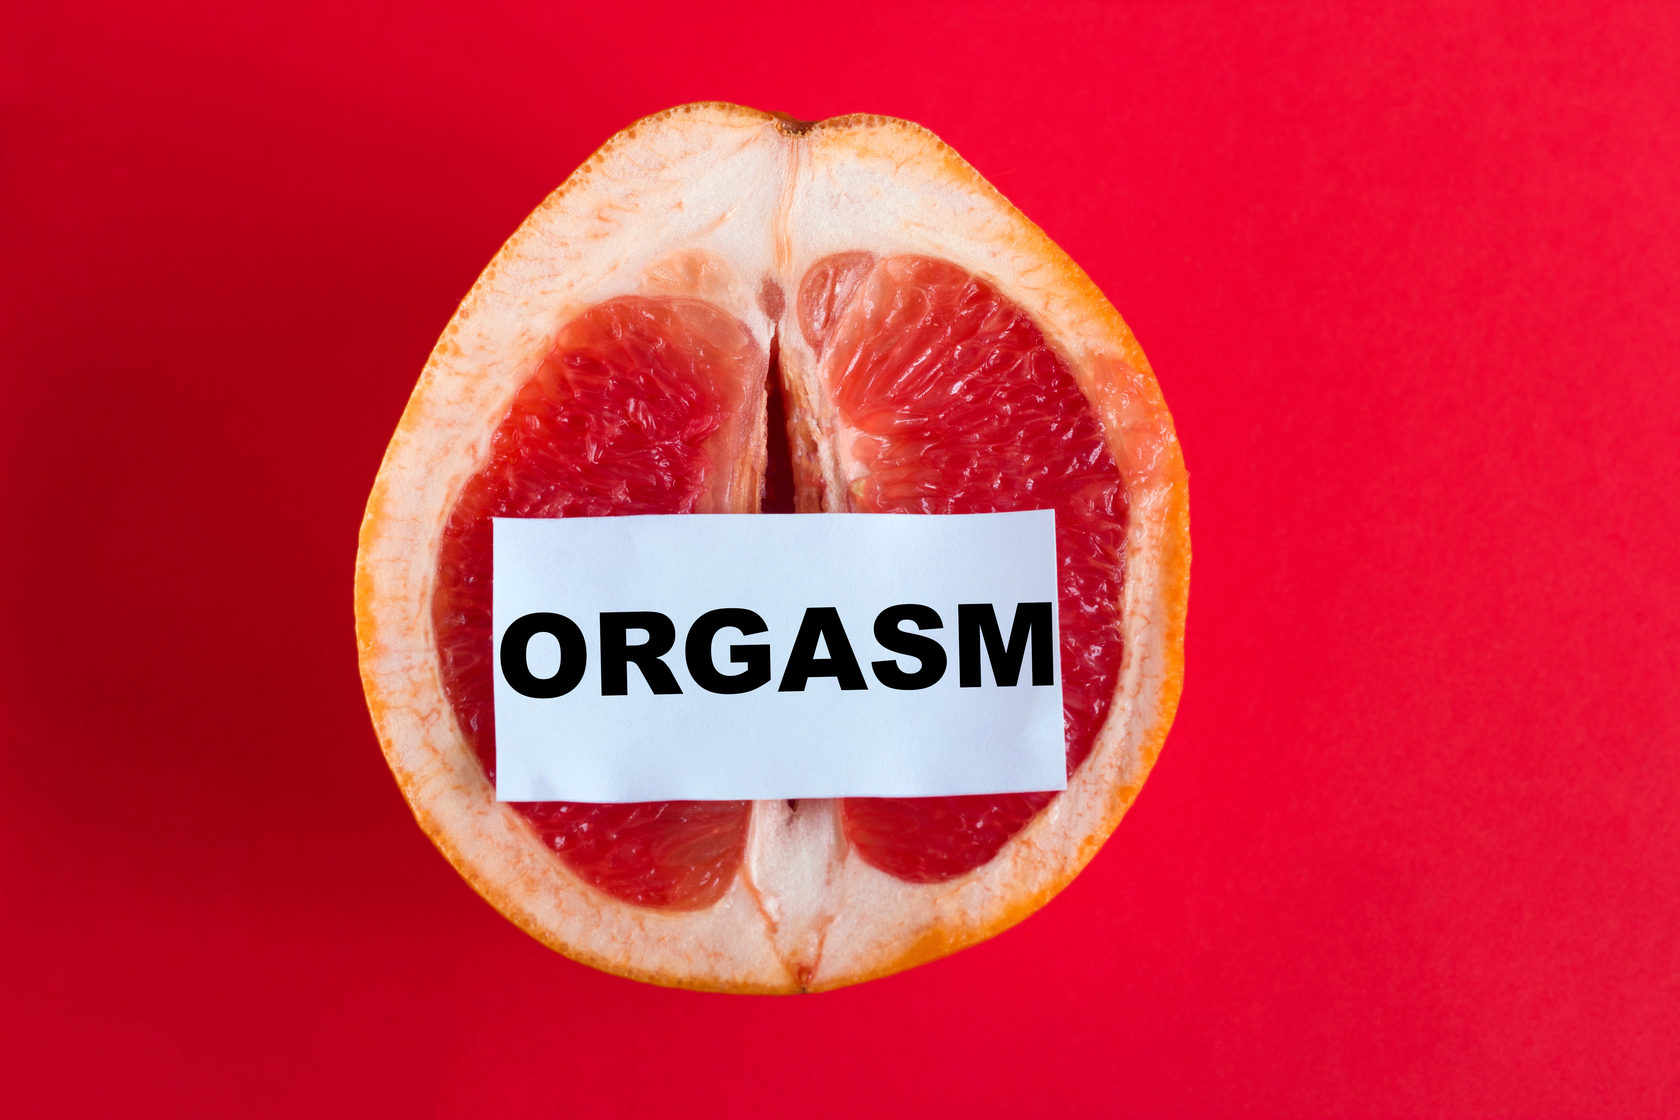 оргазм на грейфруте